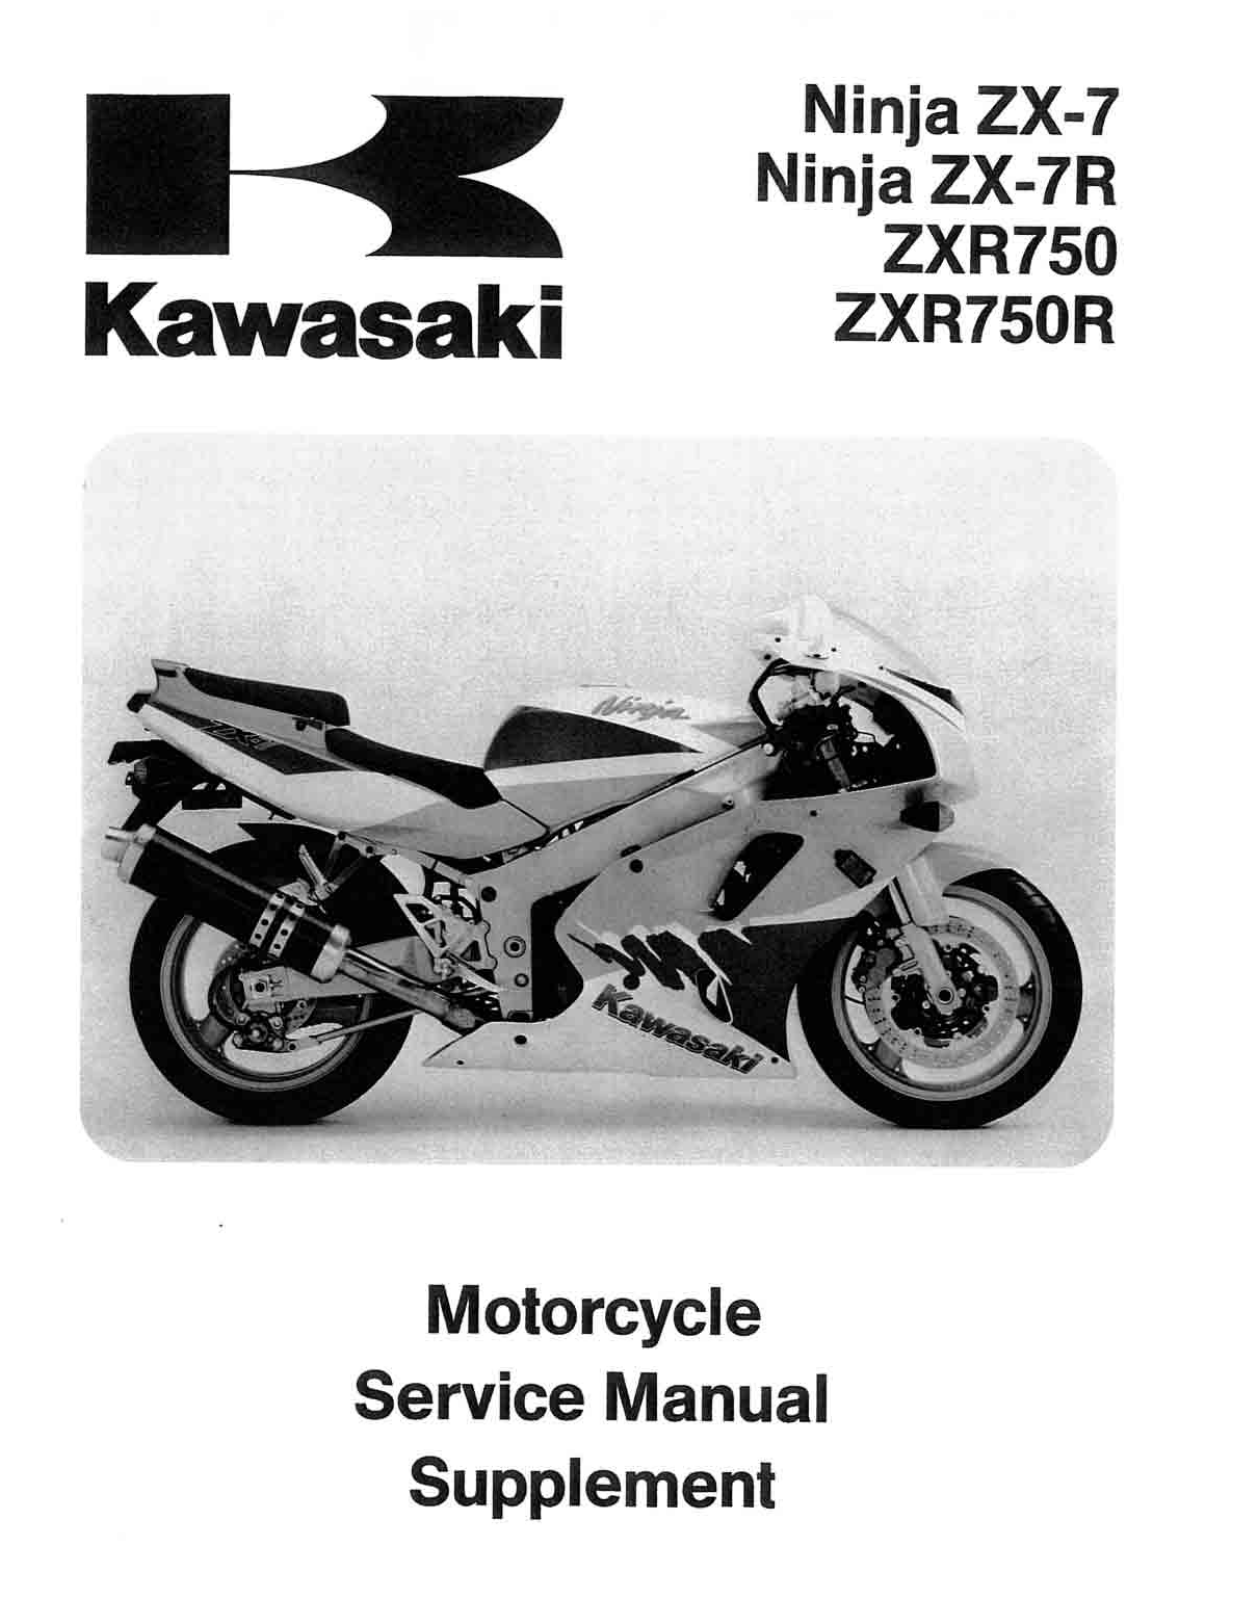 KAWASAKI Ninja ZX-7 1993-1995, Ninja ZX-7R 1993-1995, ZXR750 1993-1995, ZXR750R 1993-1995 SERVICE MANUAL